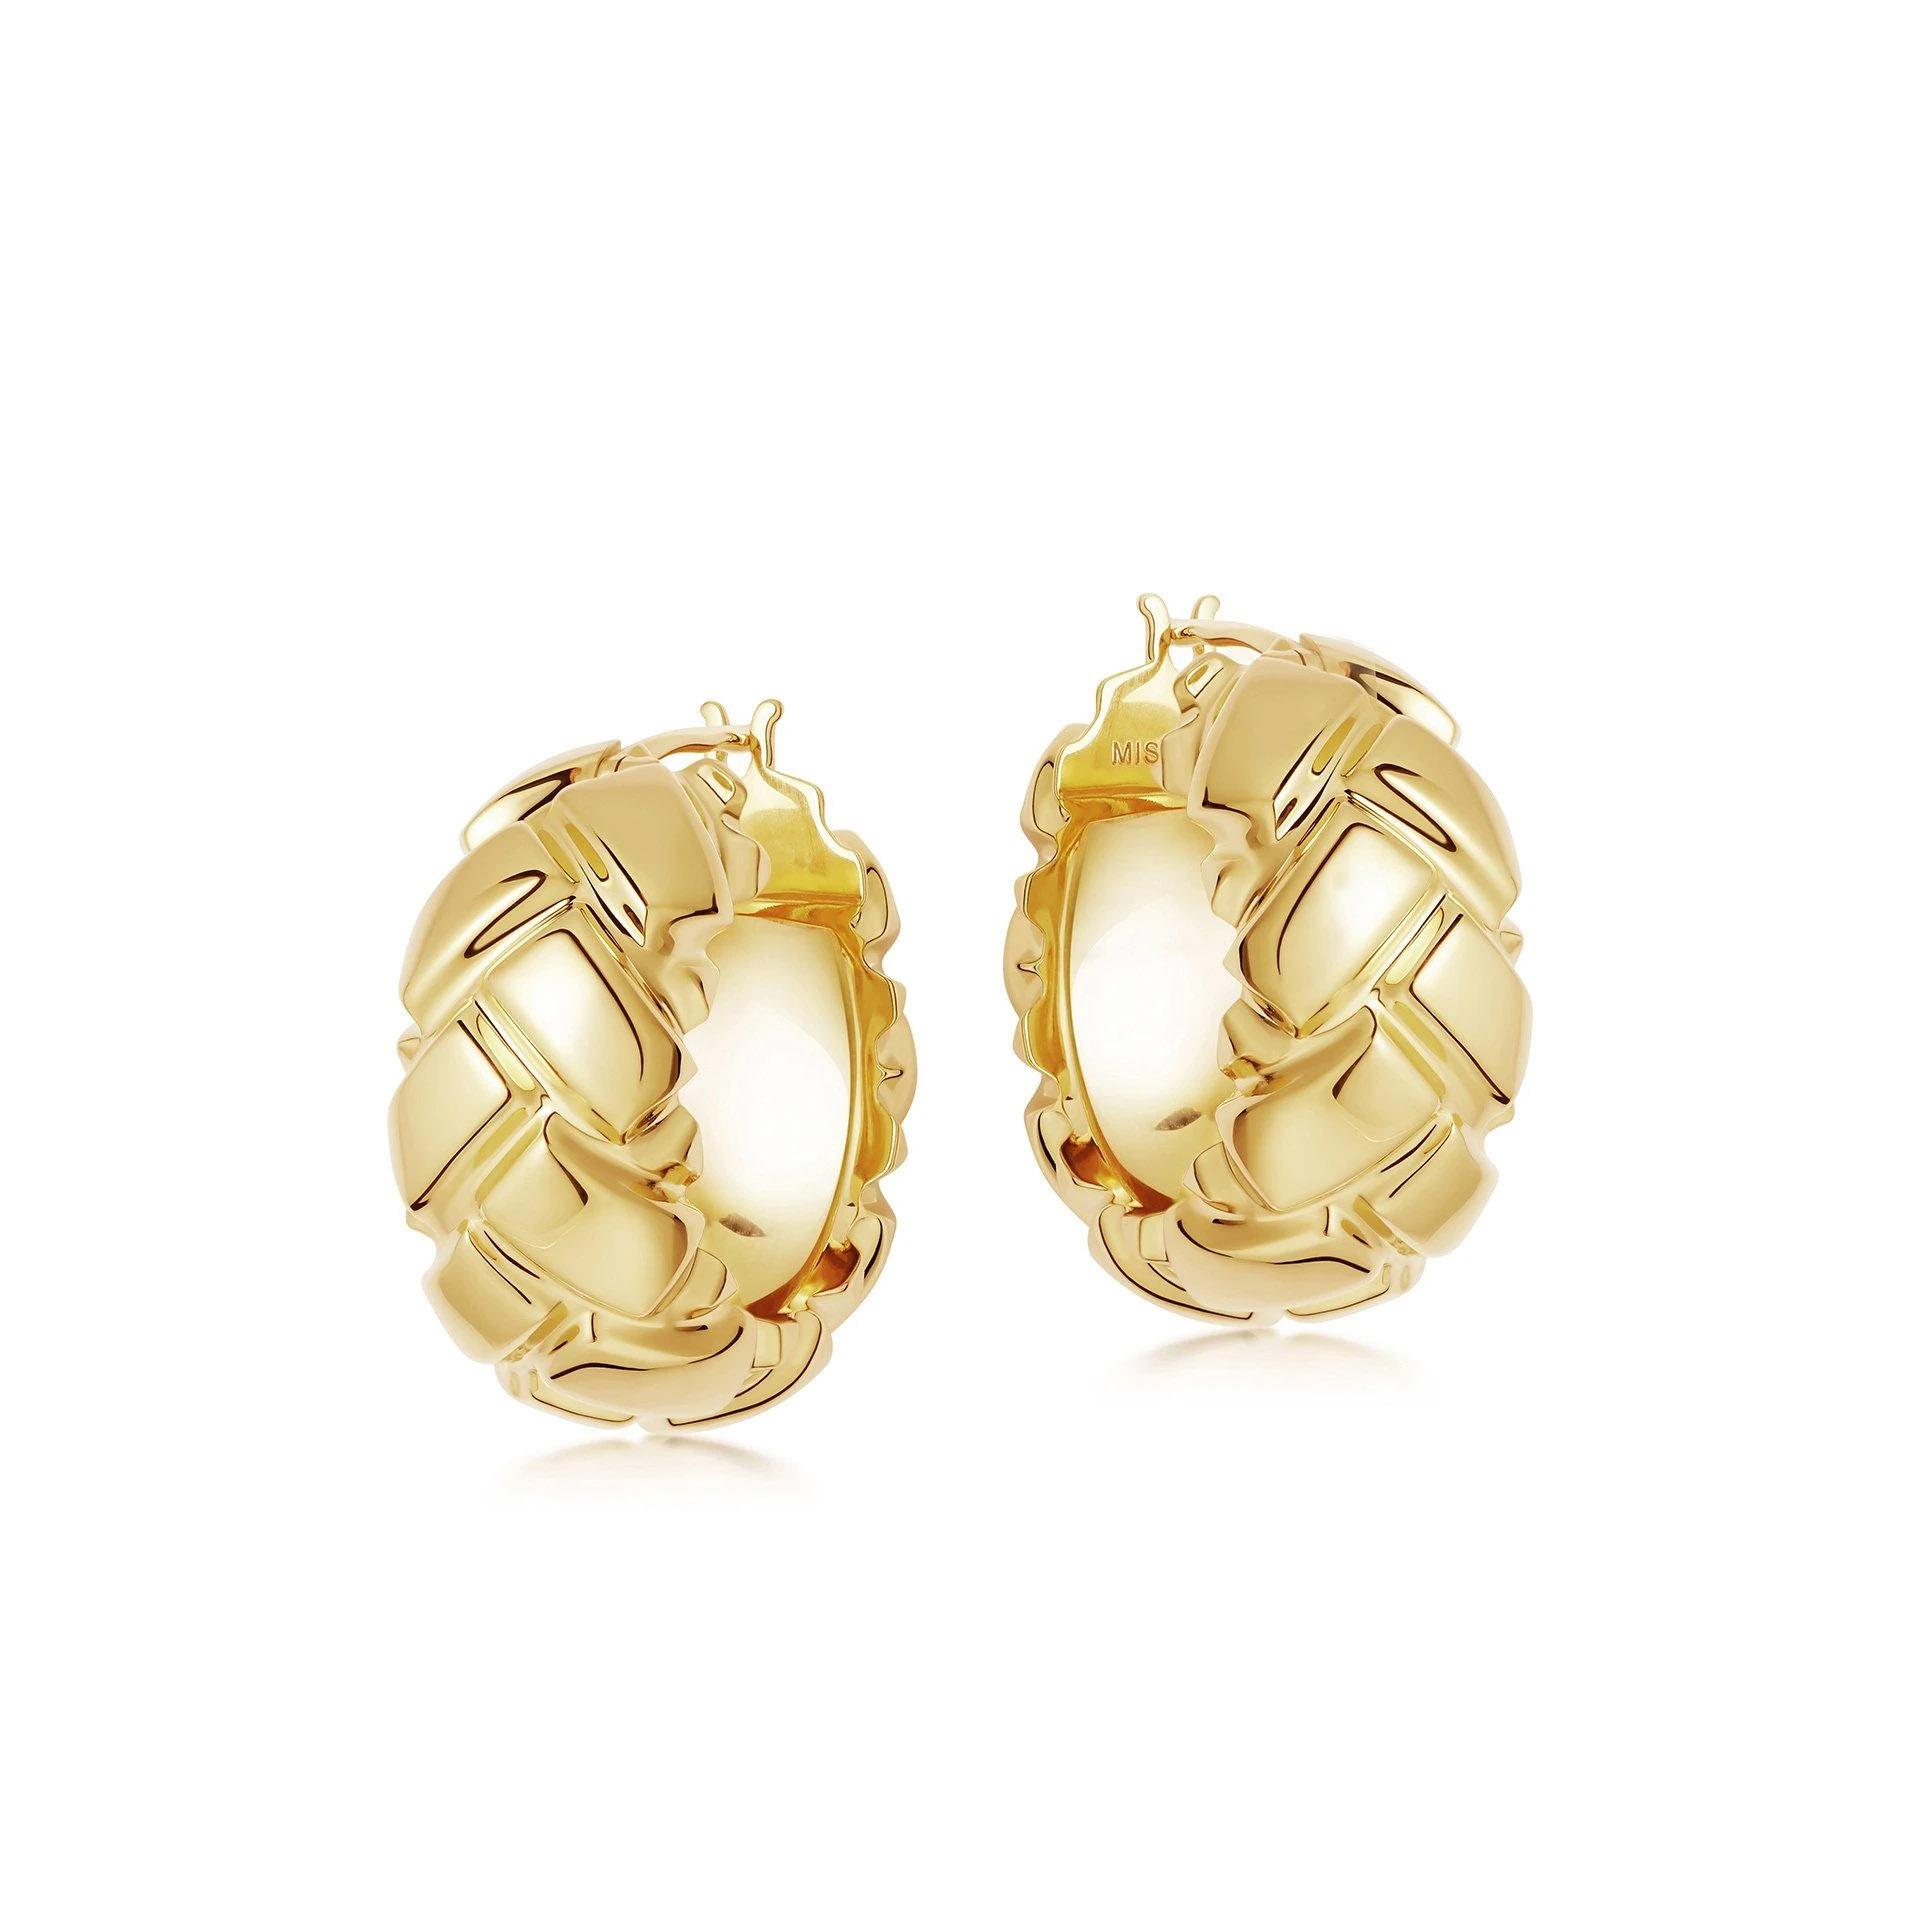 Boucles d'oreilles créoles OEM, vente en gros, avec bijoux OEM/ODM, plaqué or 18 carats sur laiton, offre un design personnalisé